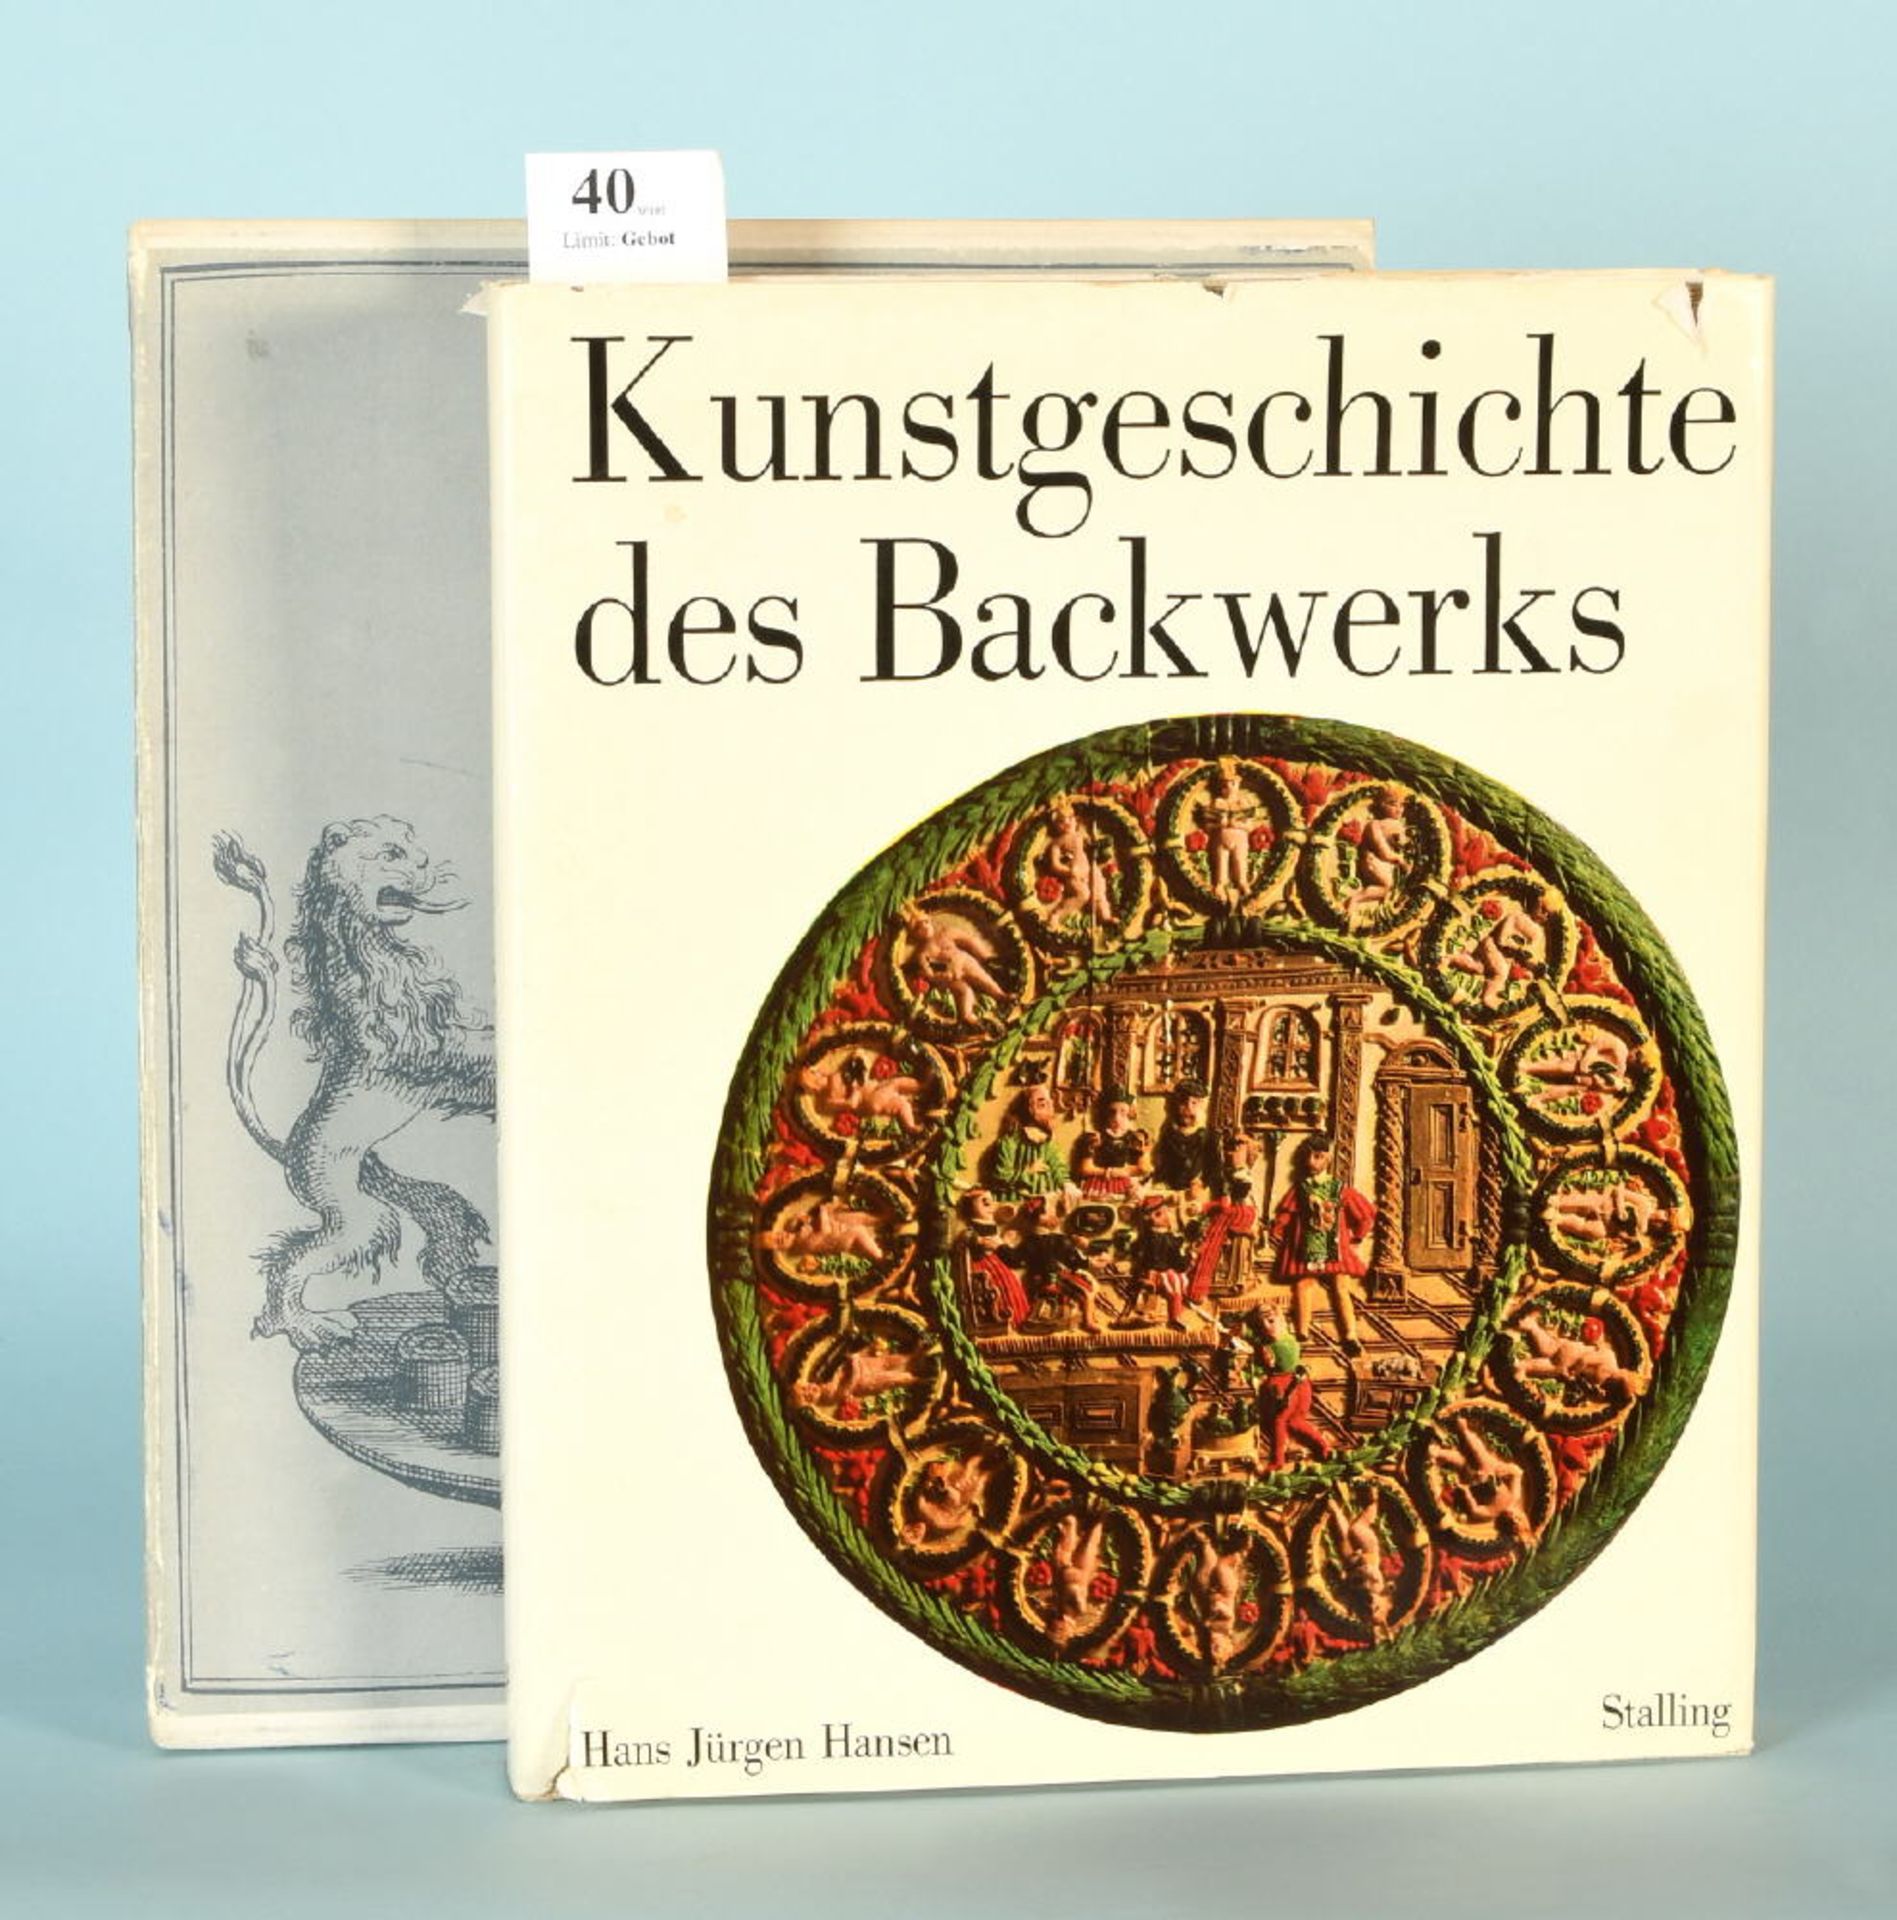 Hansen, Hans Jürgen "Kunstgeschichte des Backwerks"